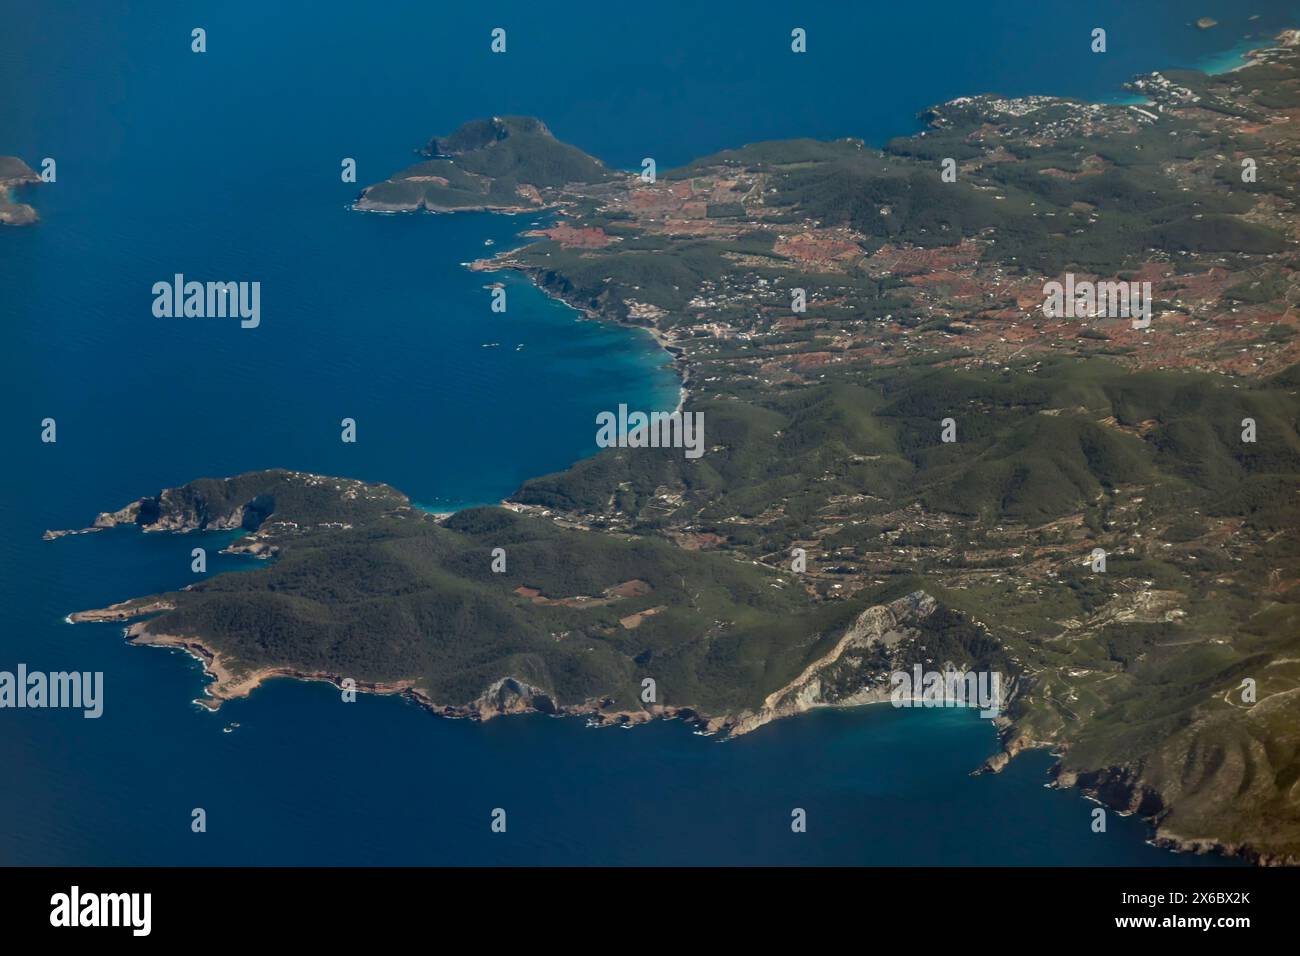 Vista aerea panoramica del nord-est dell'isola di Ibiza, delle Isole Baleari, della Spagna, di Sant Vicent de sa Cala e dei dintorni Foto Stock